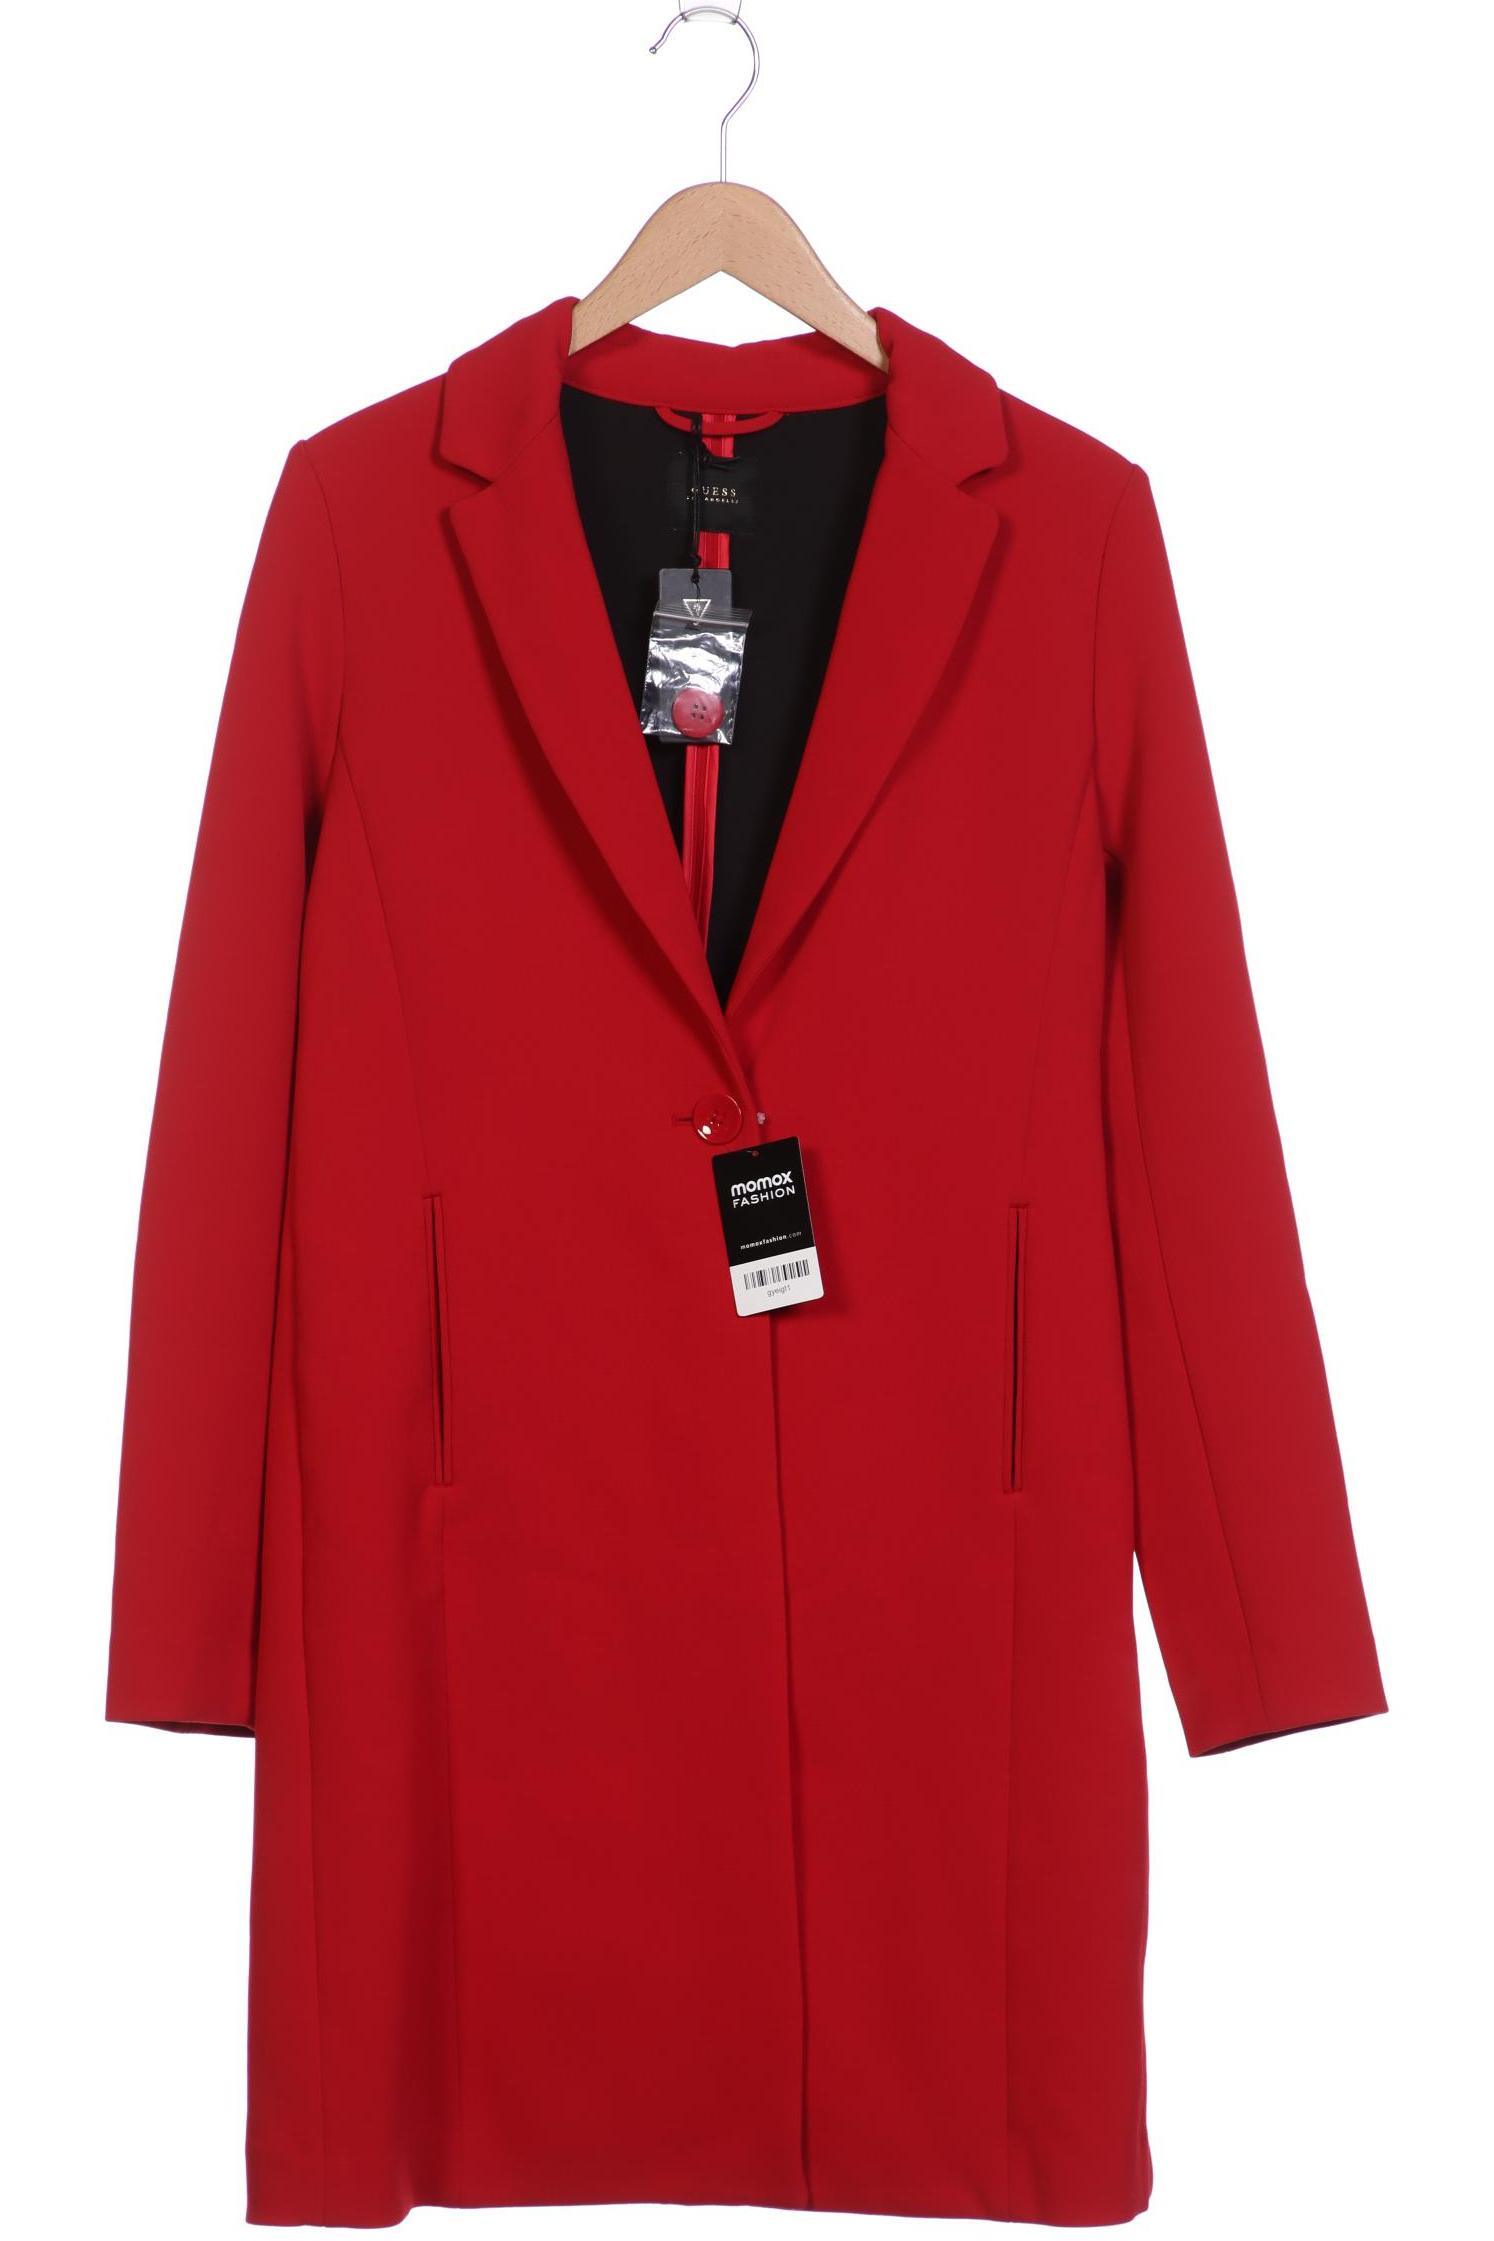 Guess Damen Mantel, rot, Gr. 38 von Guess